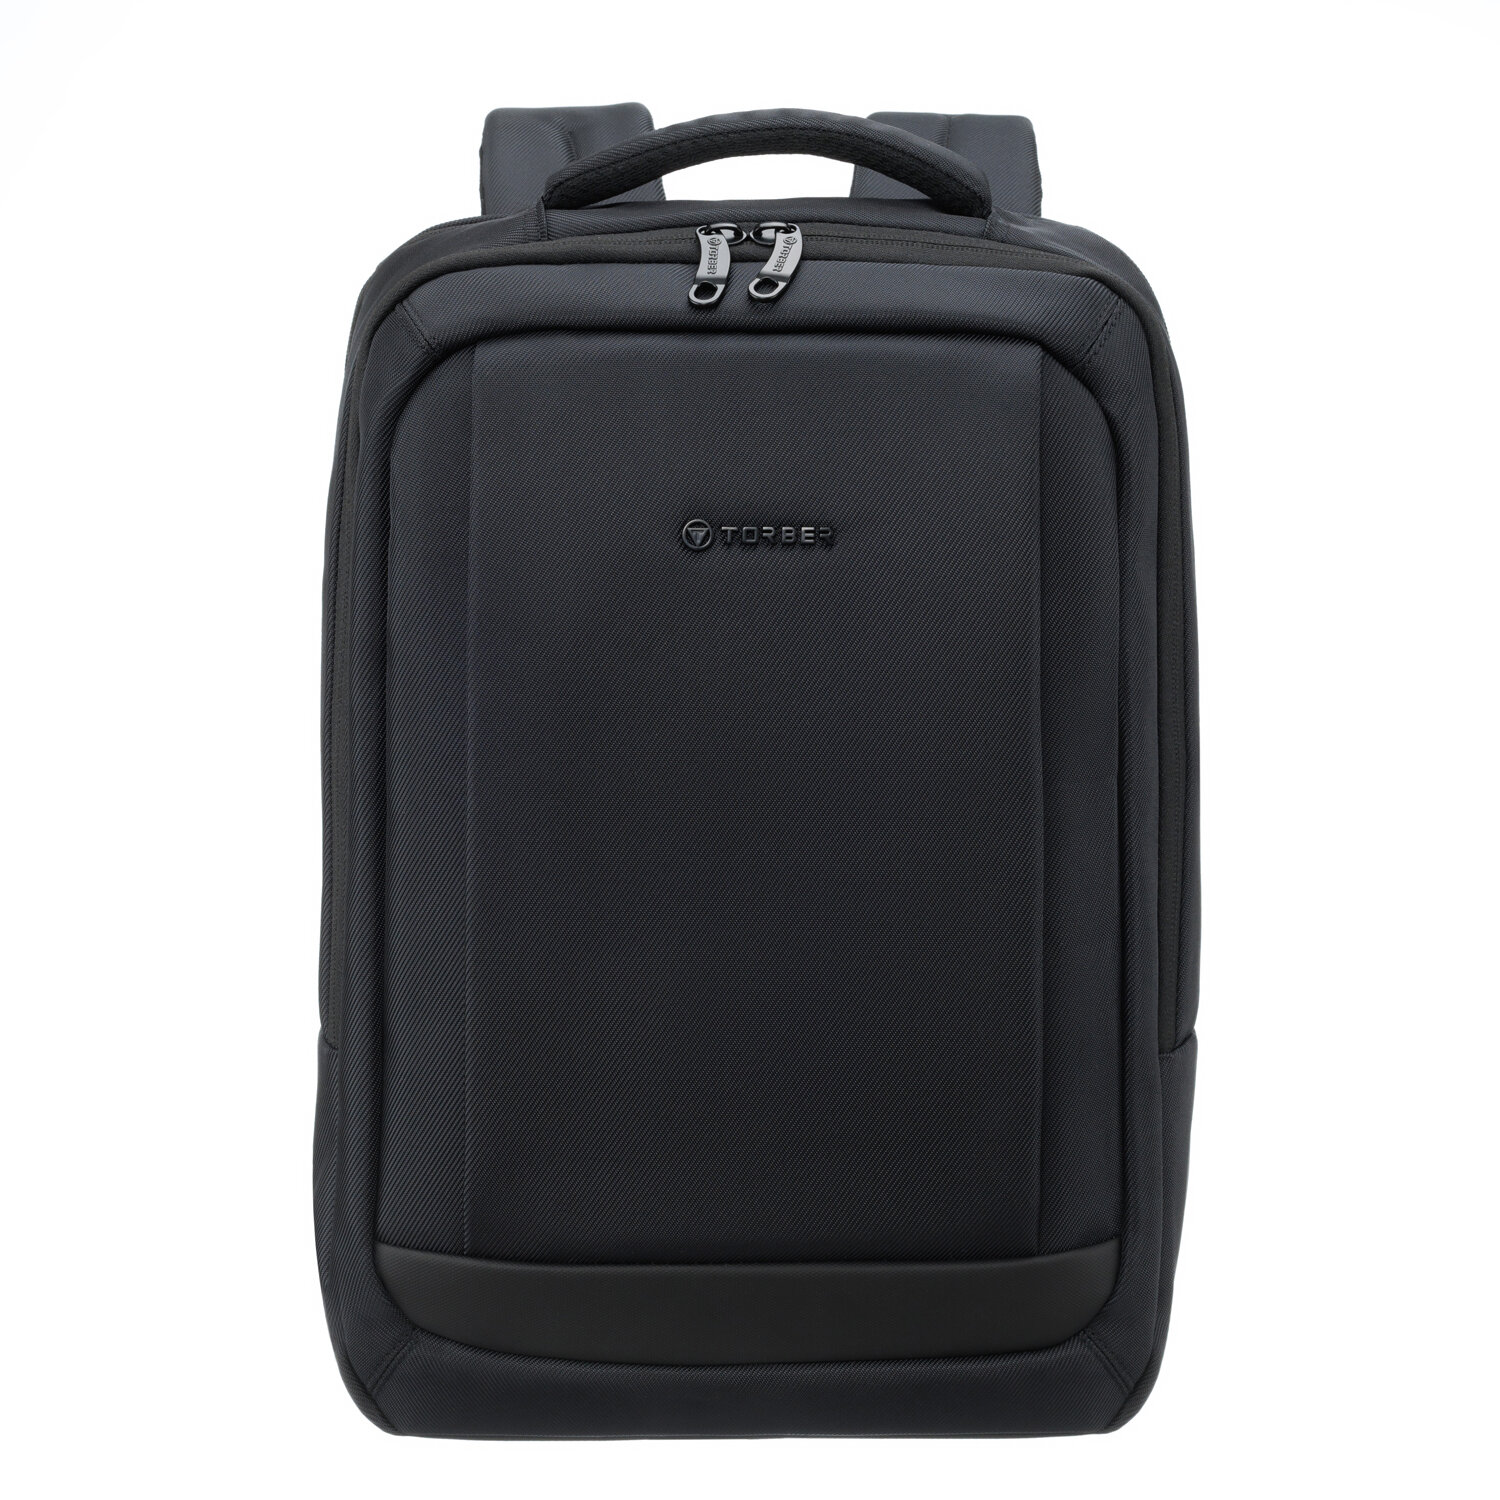 Деловой рюкзак TORBER VOYAGE TB1002 с отделением для ноутбука 17', черный, полиэстер 900D, 31х17х44 см, 18 л